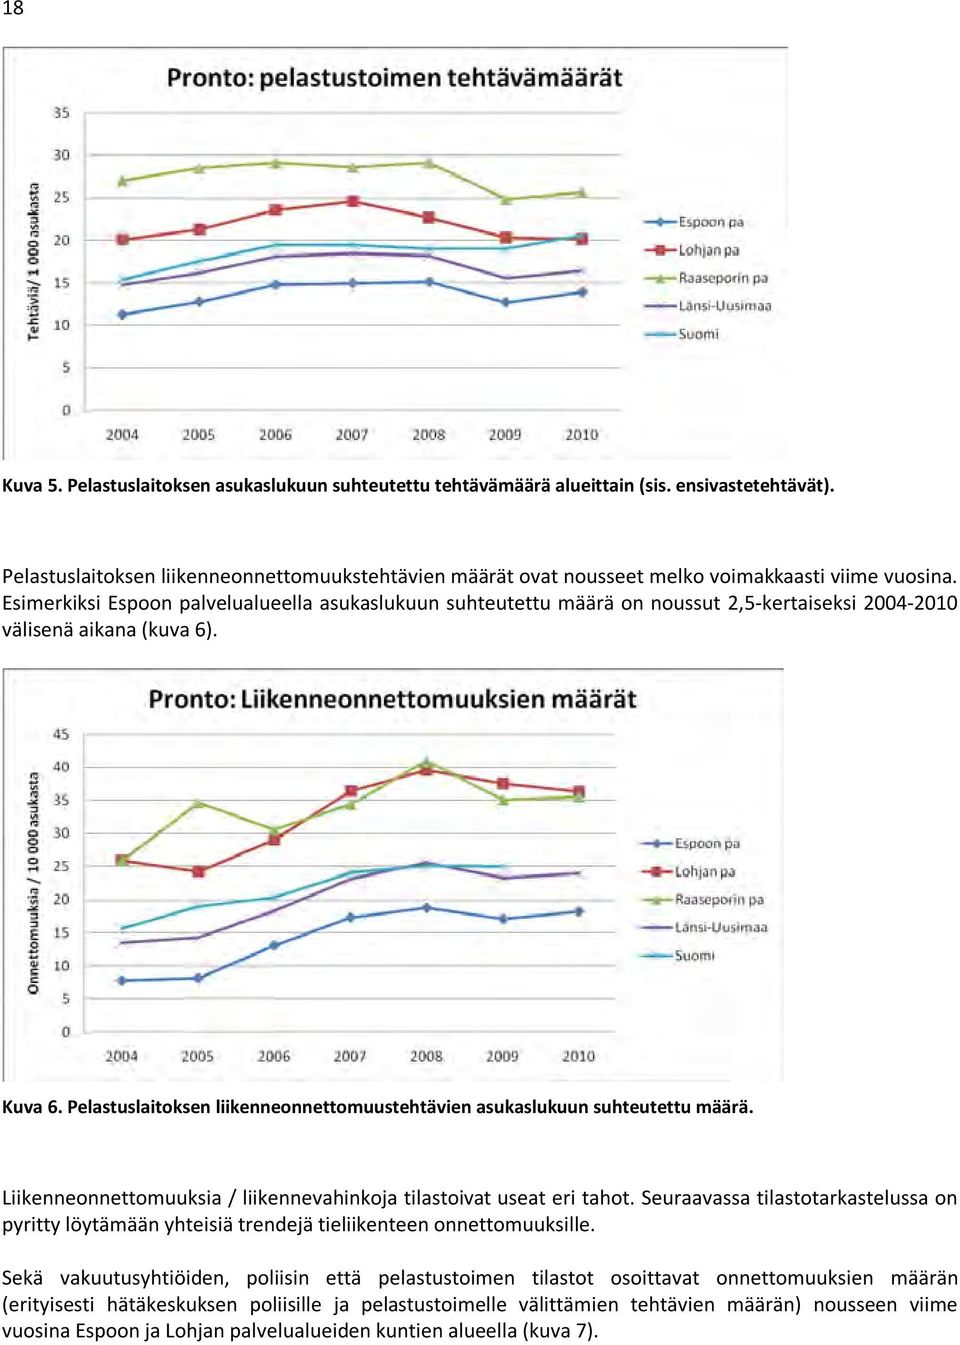 Esimerkiksi Espoon palvelualueella asukaslukuun suhteutettu määrä on noussut 2,5-kertaiseksi 2004-2010 välisenä aikana (kuva 6). Kuva 6.